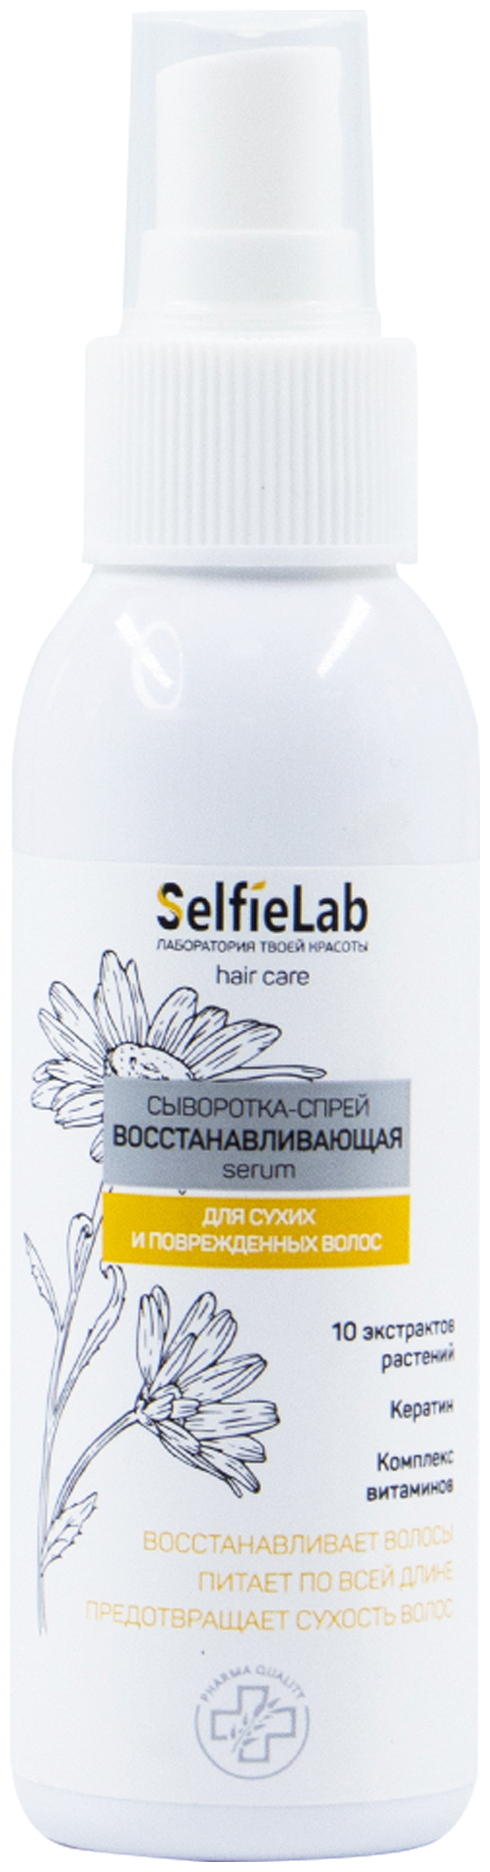 SelfieLab Сыворотка-спрей для волос восстанавливающая, 110 мл, спрей